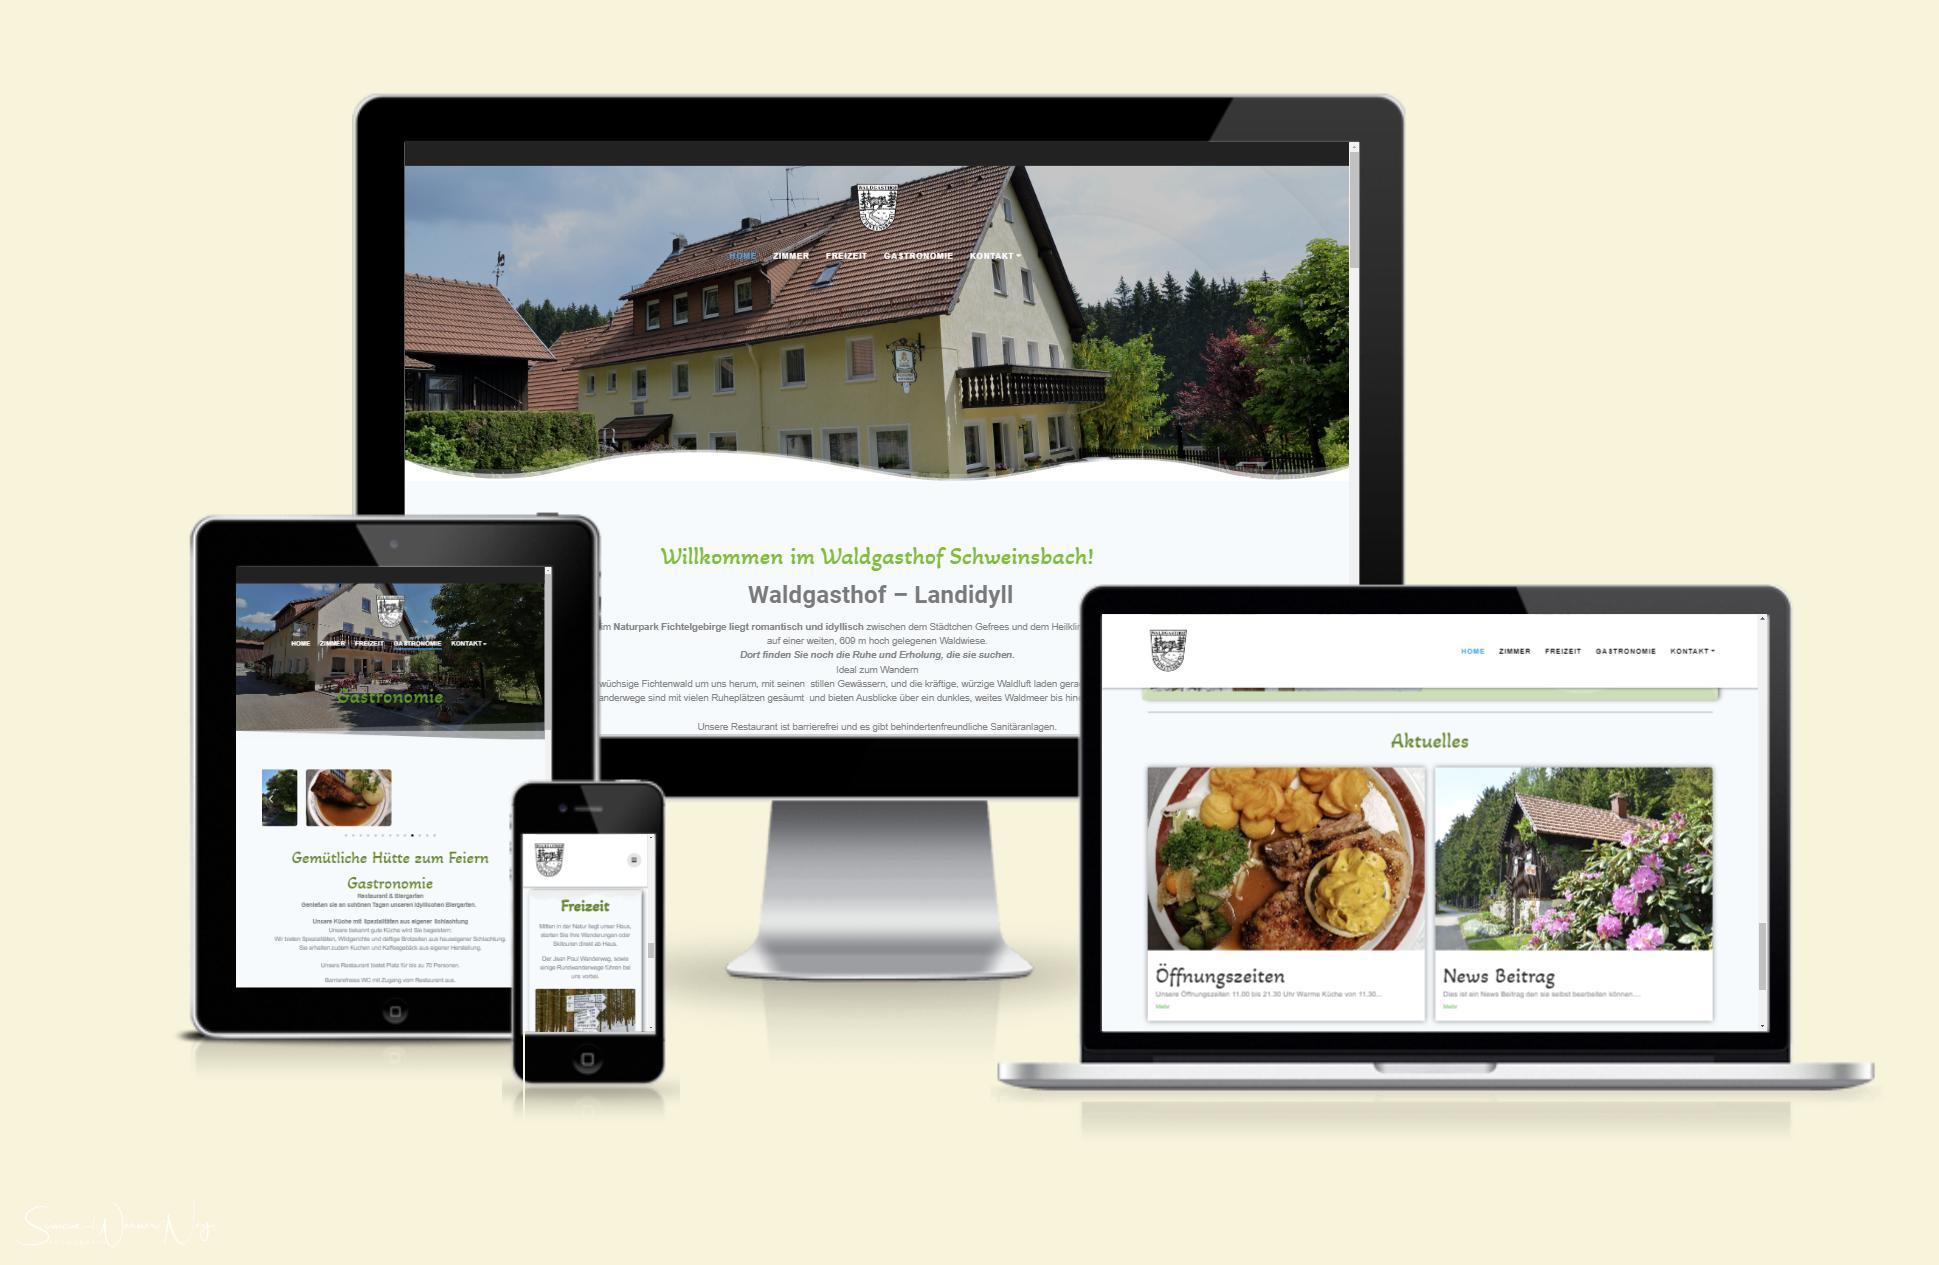 Die neue Webseite vom Waldgasthof Schweinsbach